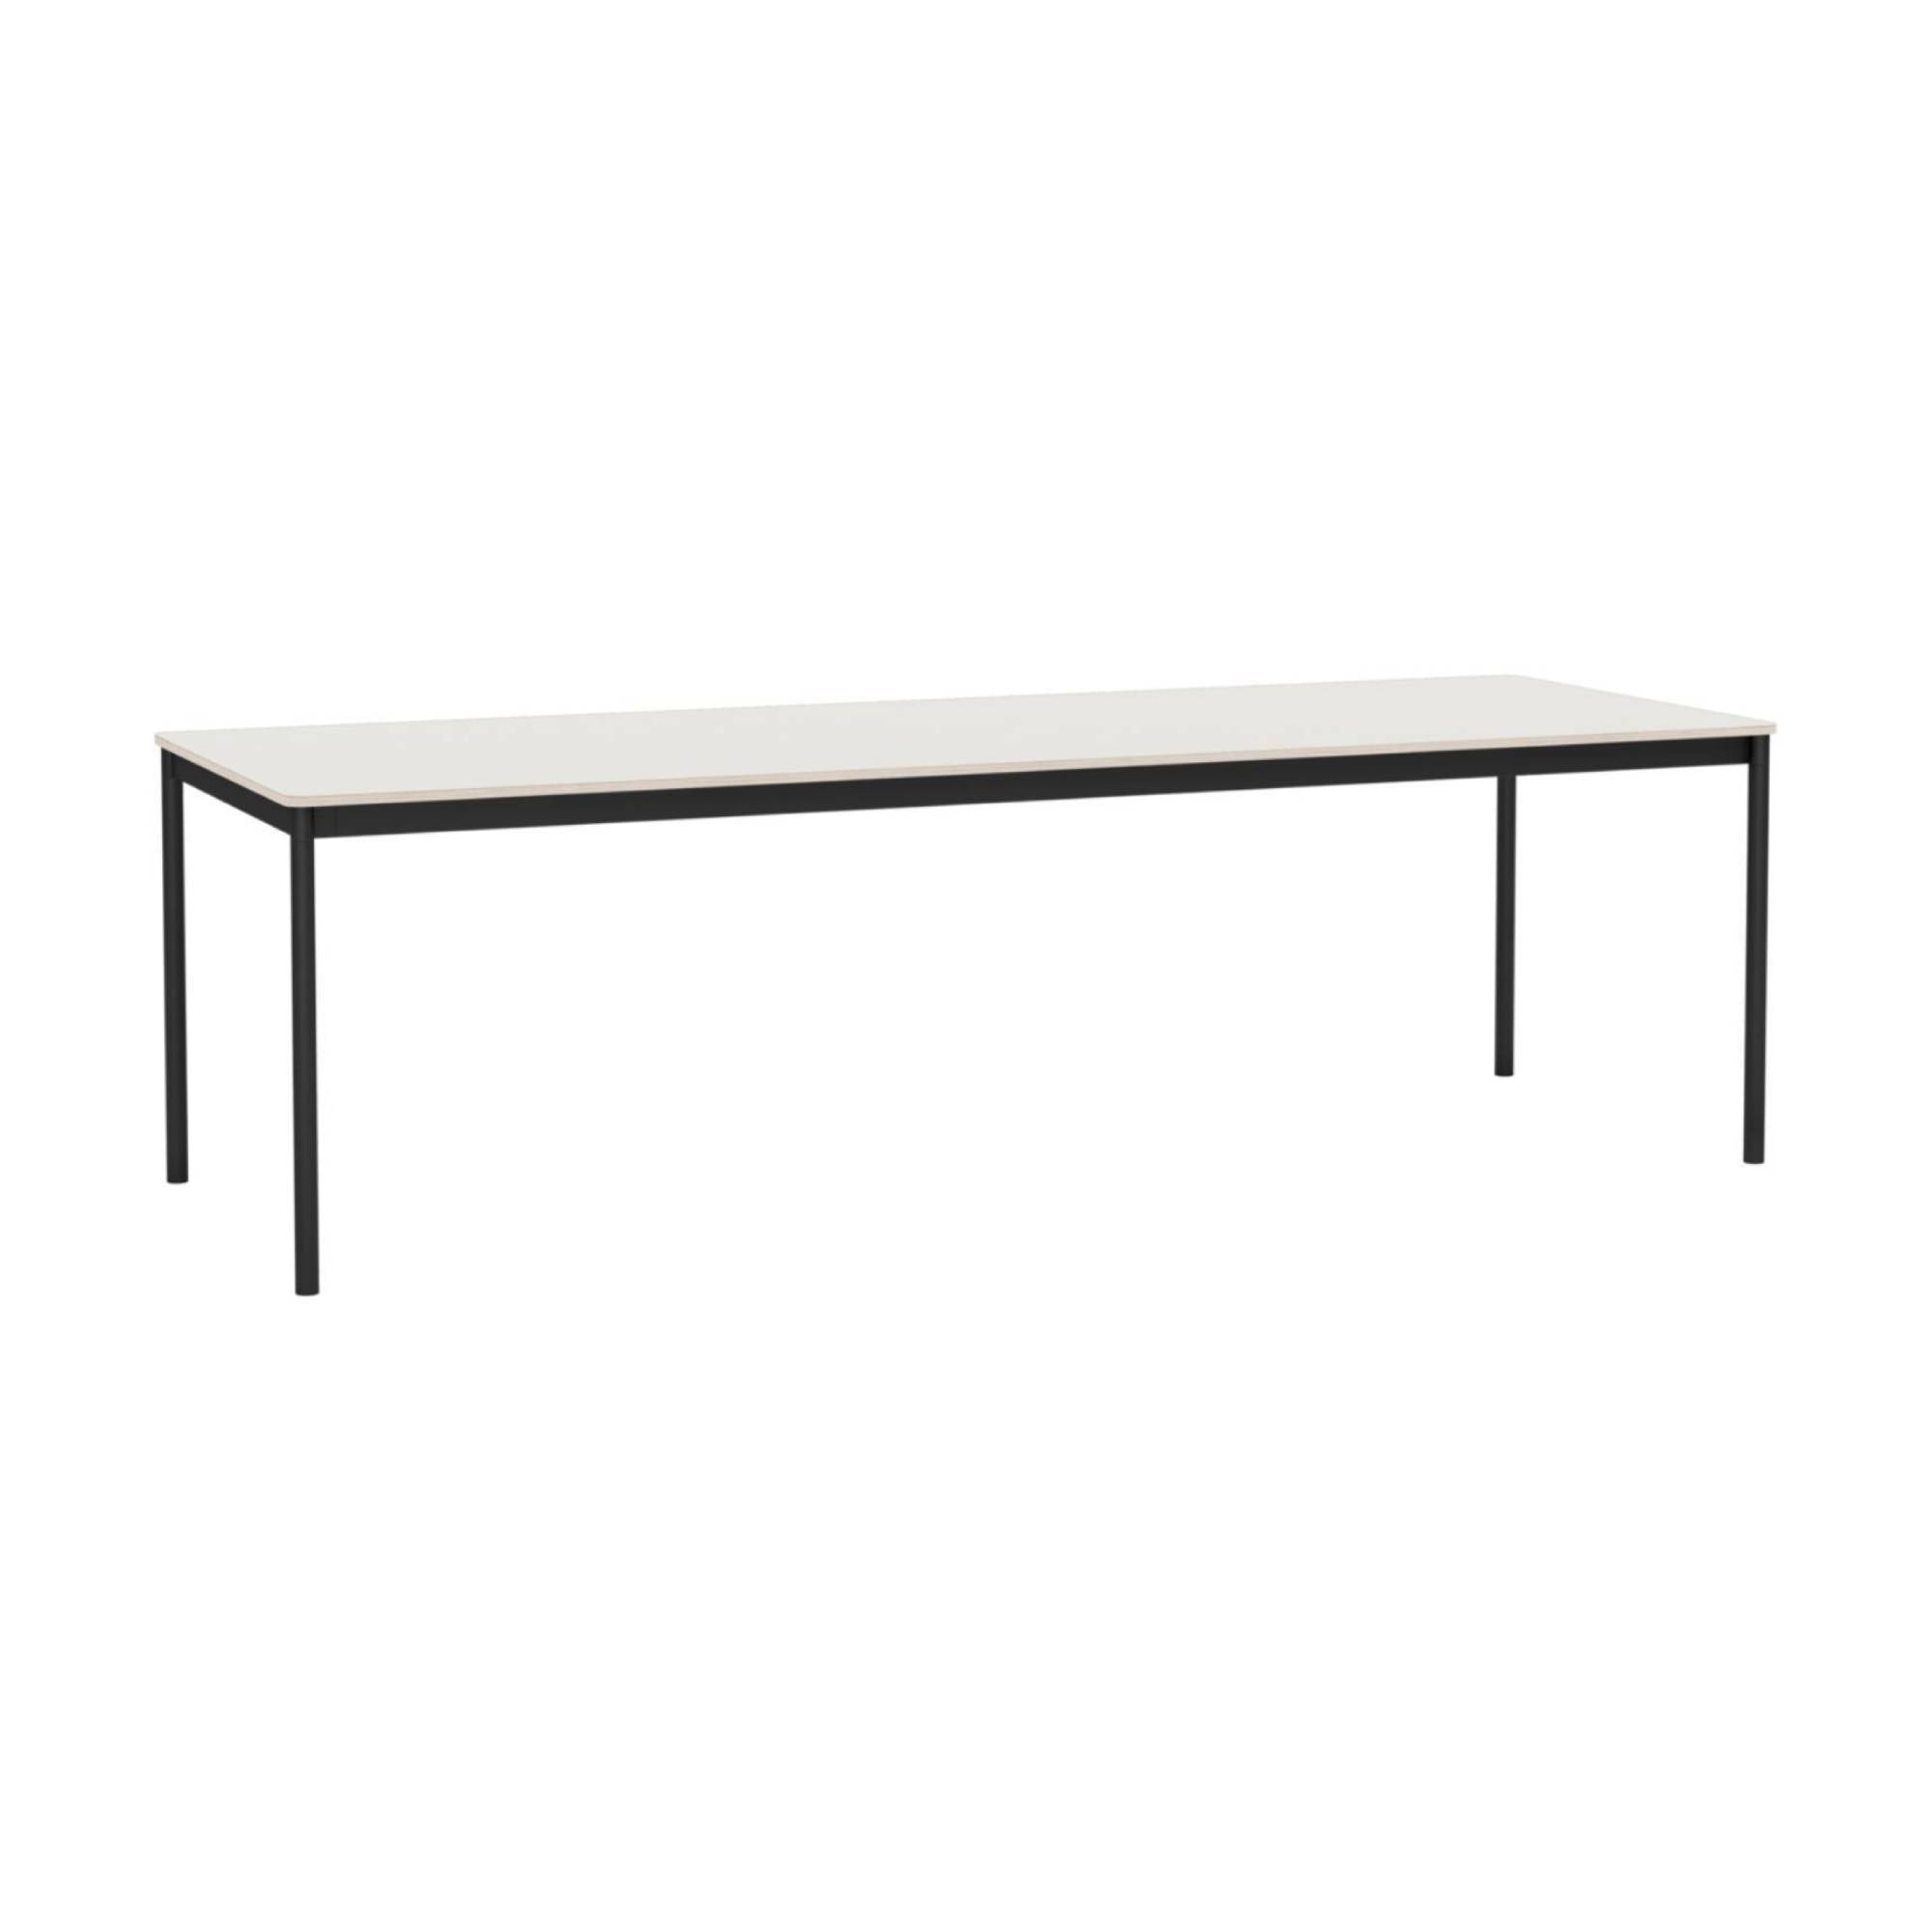 Base Table: Large + White Nanolaminate + Plywood + Black